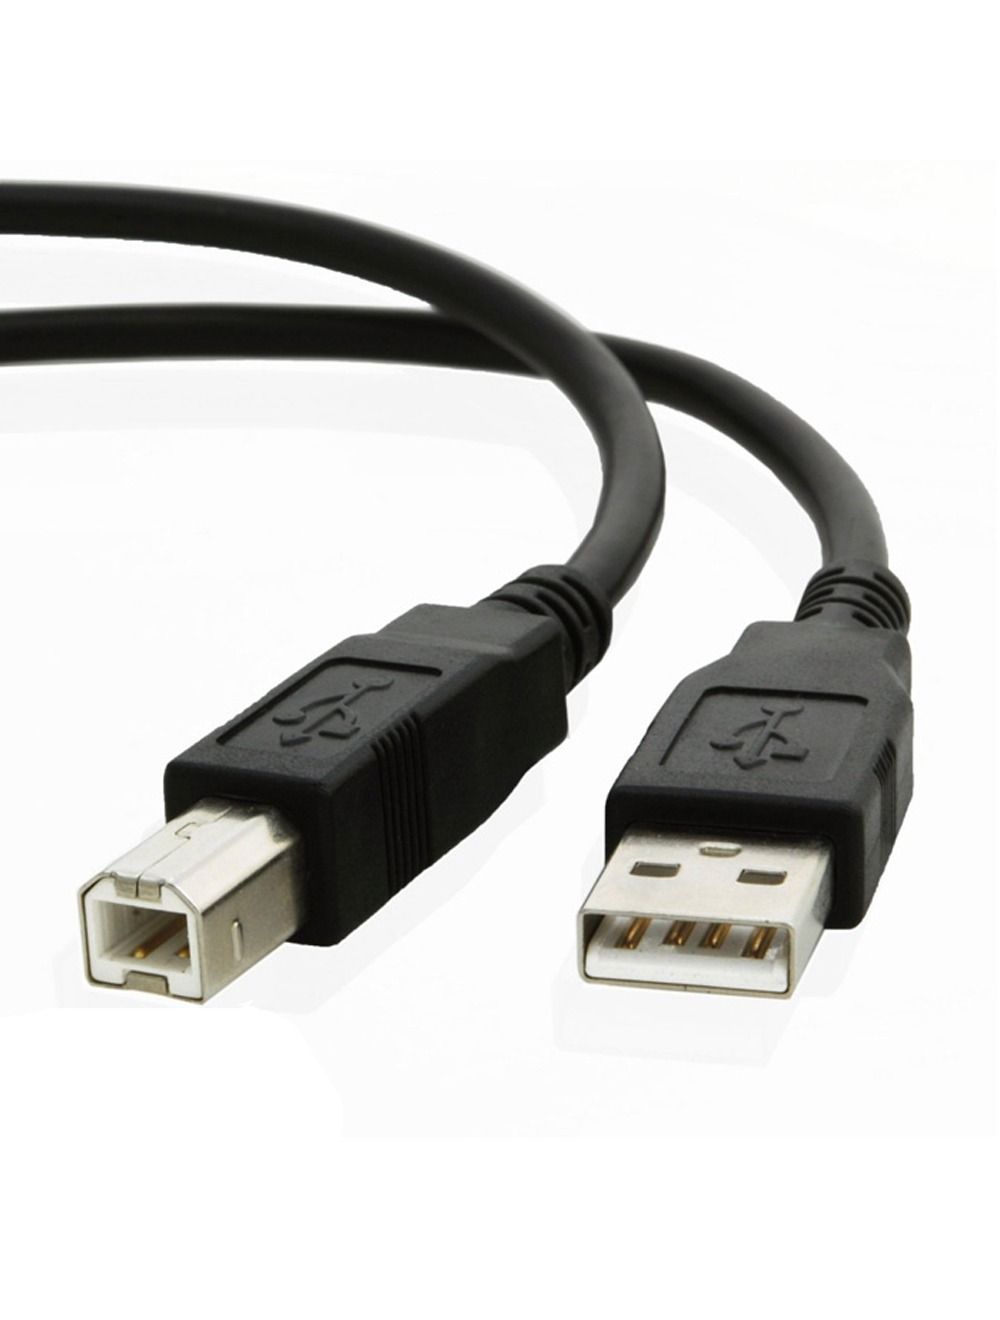 2B (DC027) - Cable USB Printer M/M - 10M